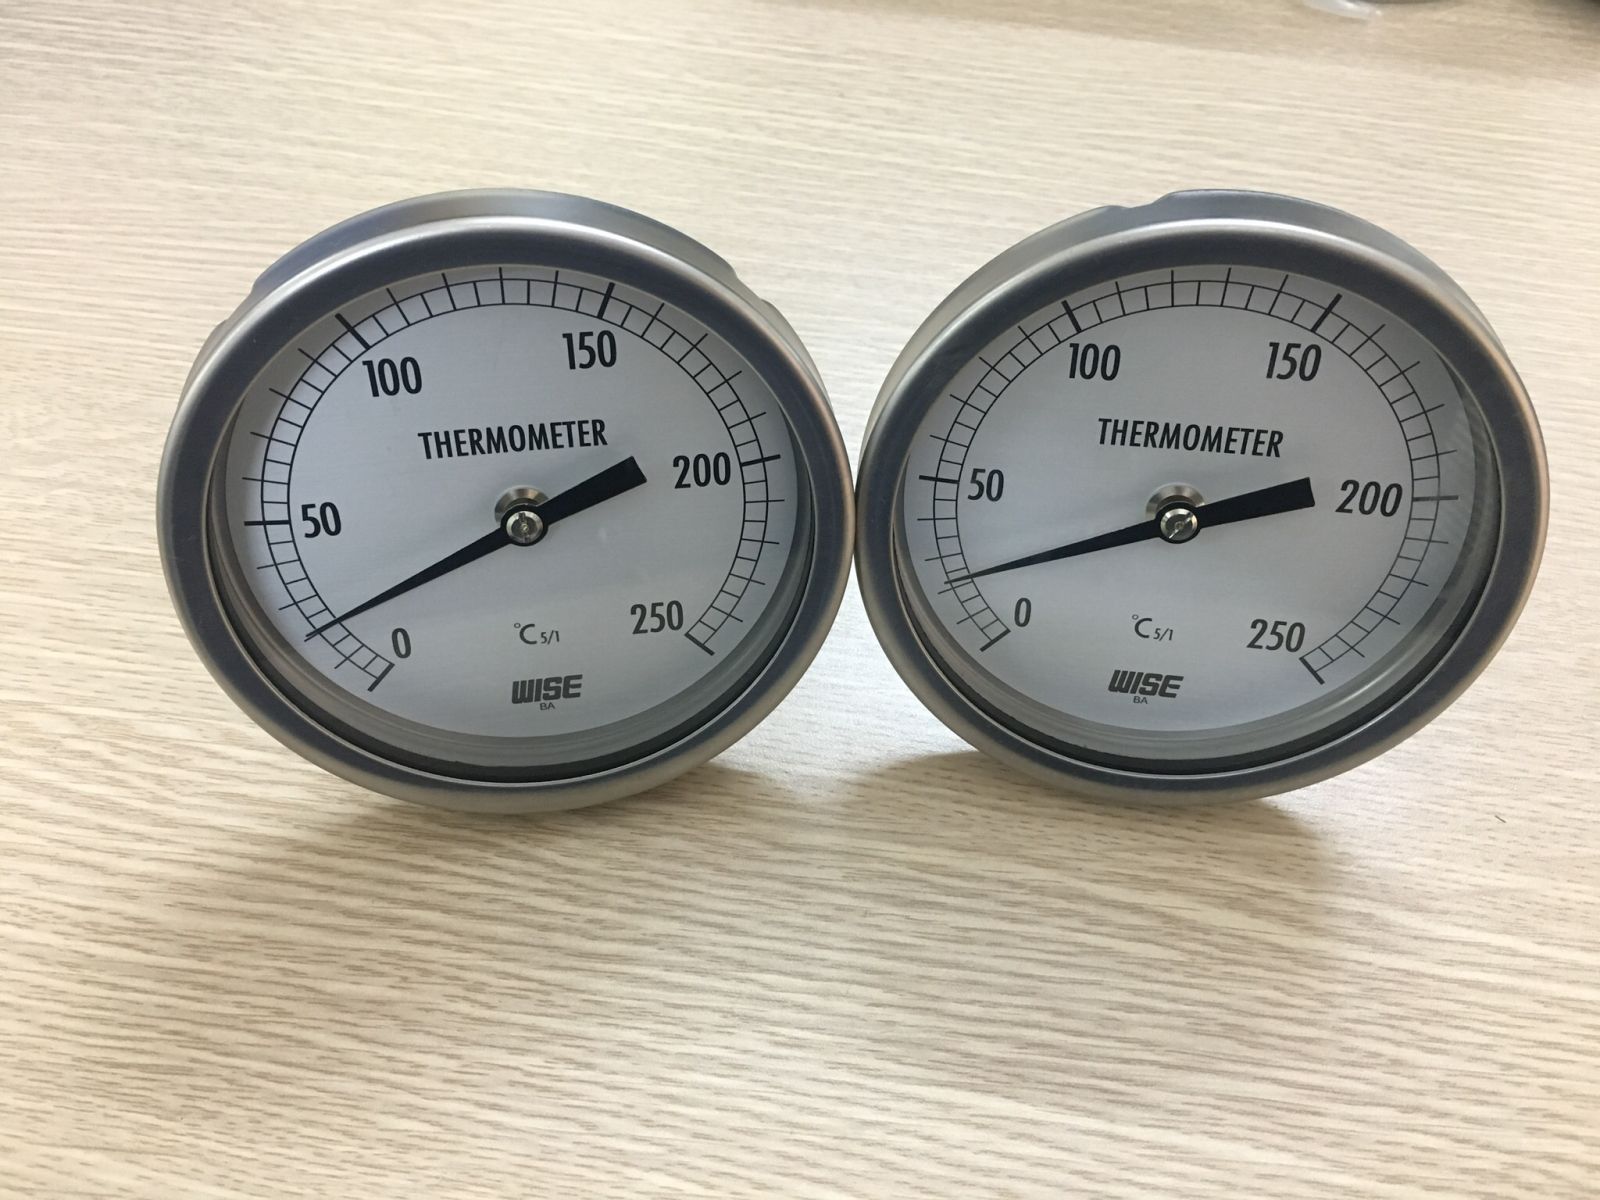 Đồng hồ nhiệt độ wise T110 0-250 độ C